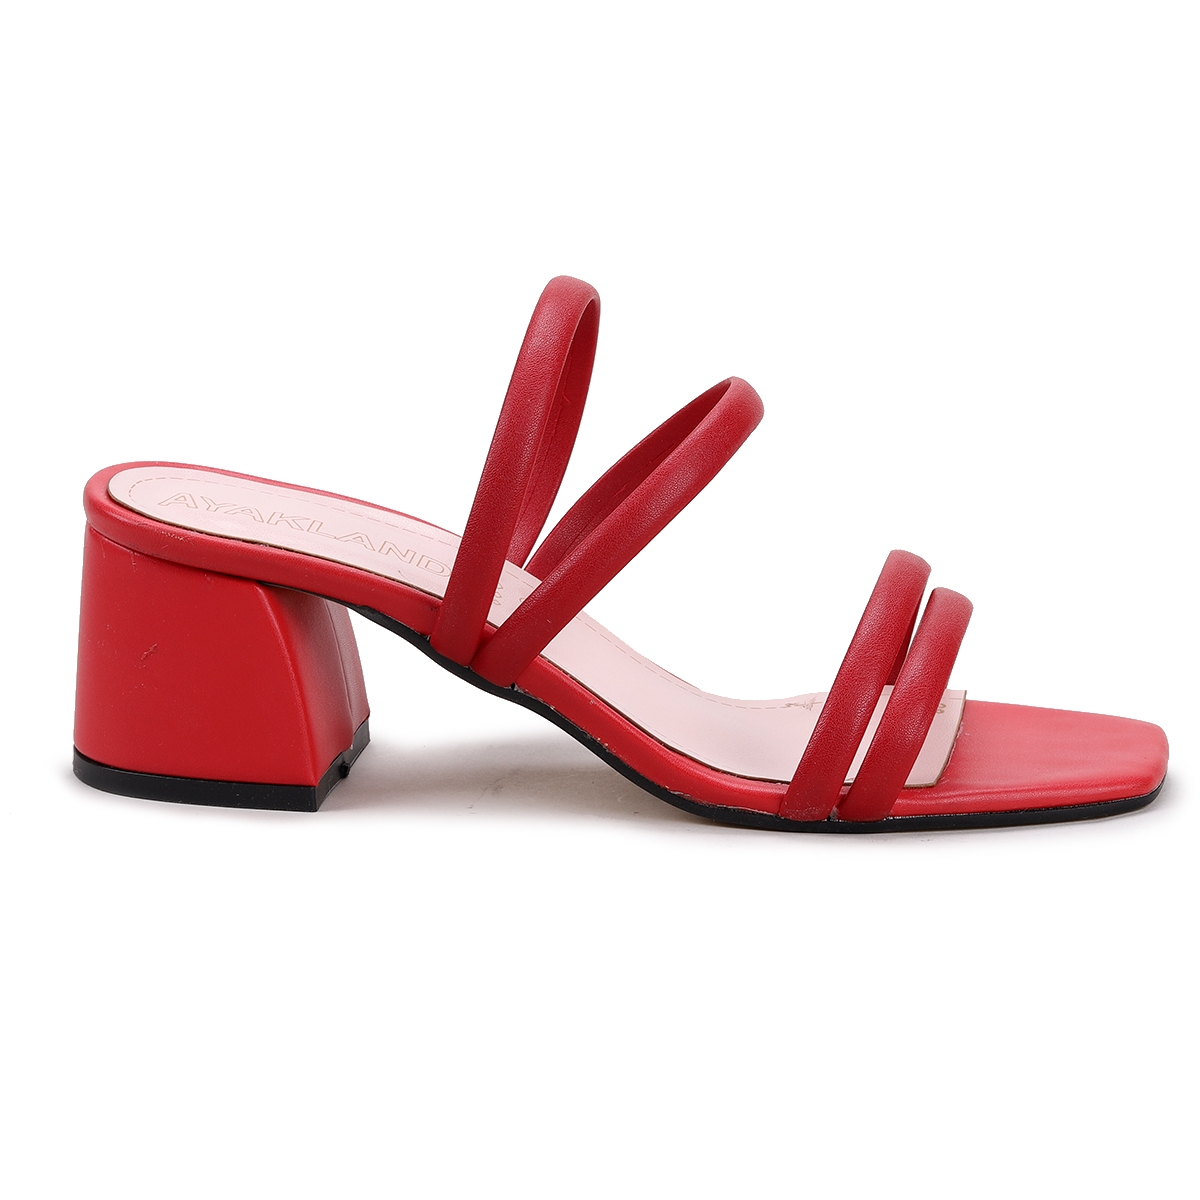 Flo 907-2158 Cilt 5 Cm Topuklu Kadın Terlik Kırmızı. 6